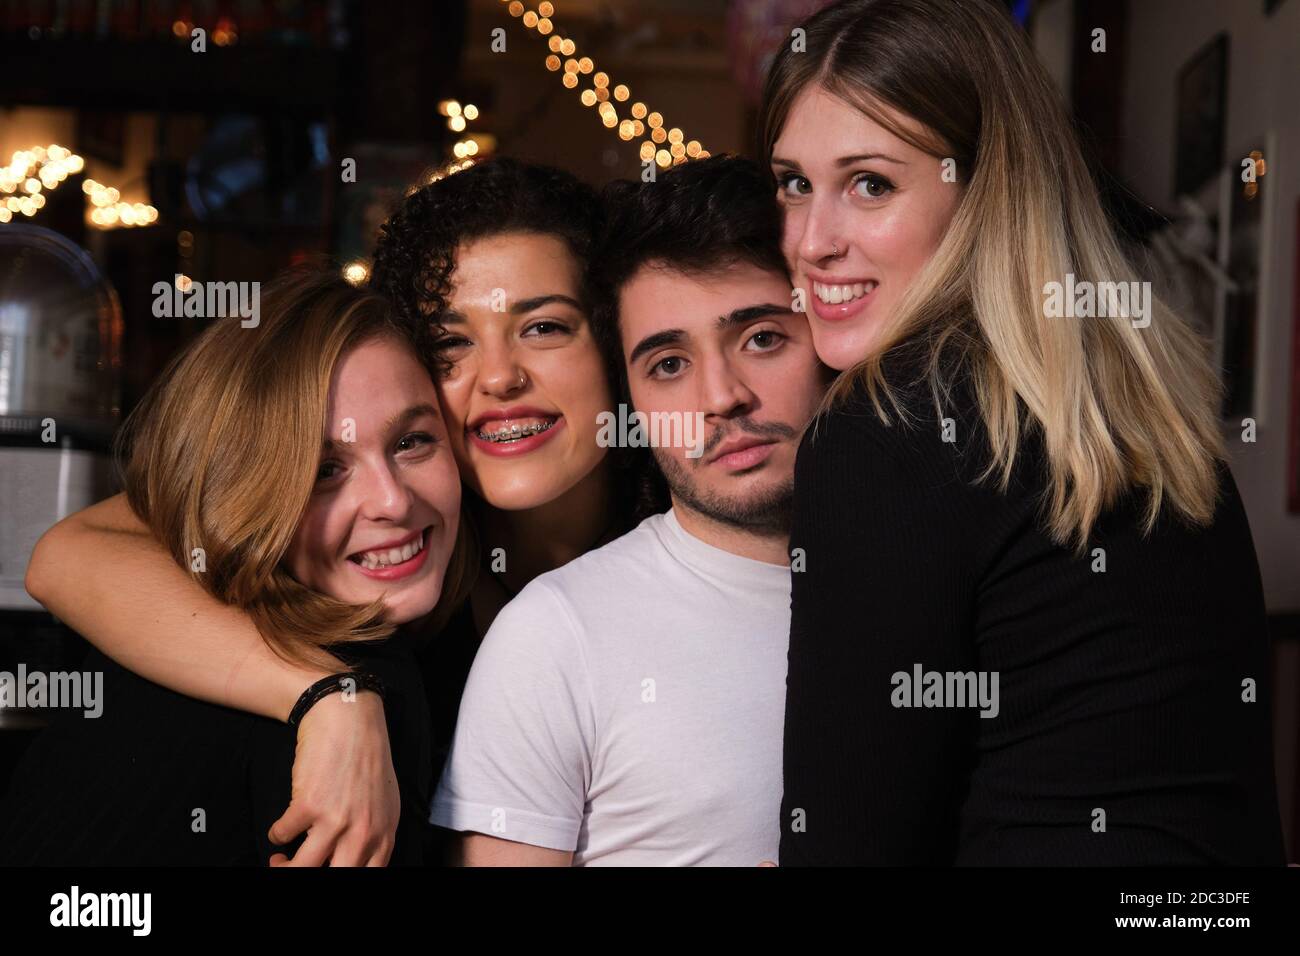 Drei lächelnde junge Frauen und ein ernsthafter junger Mann umarmten sich gegenseitig in einer Bar. Gruppe von Freunden. Stockfoto